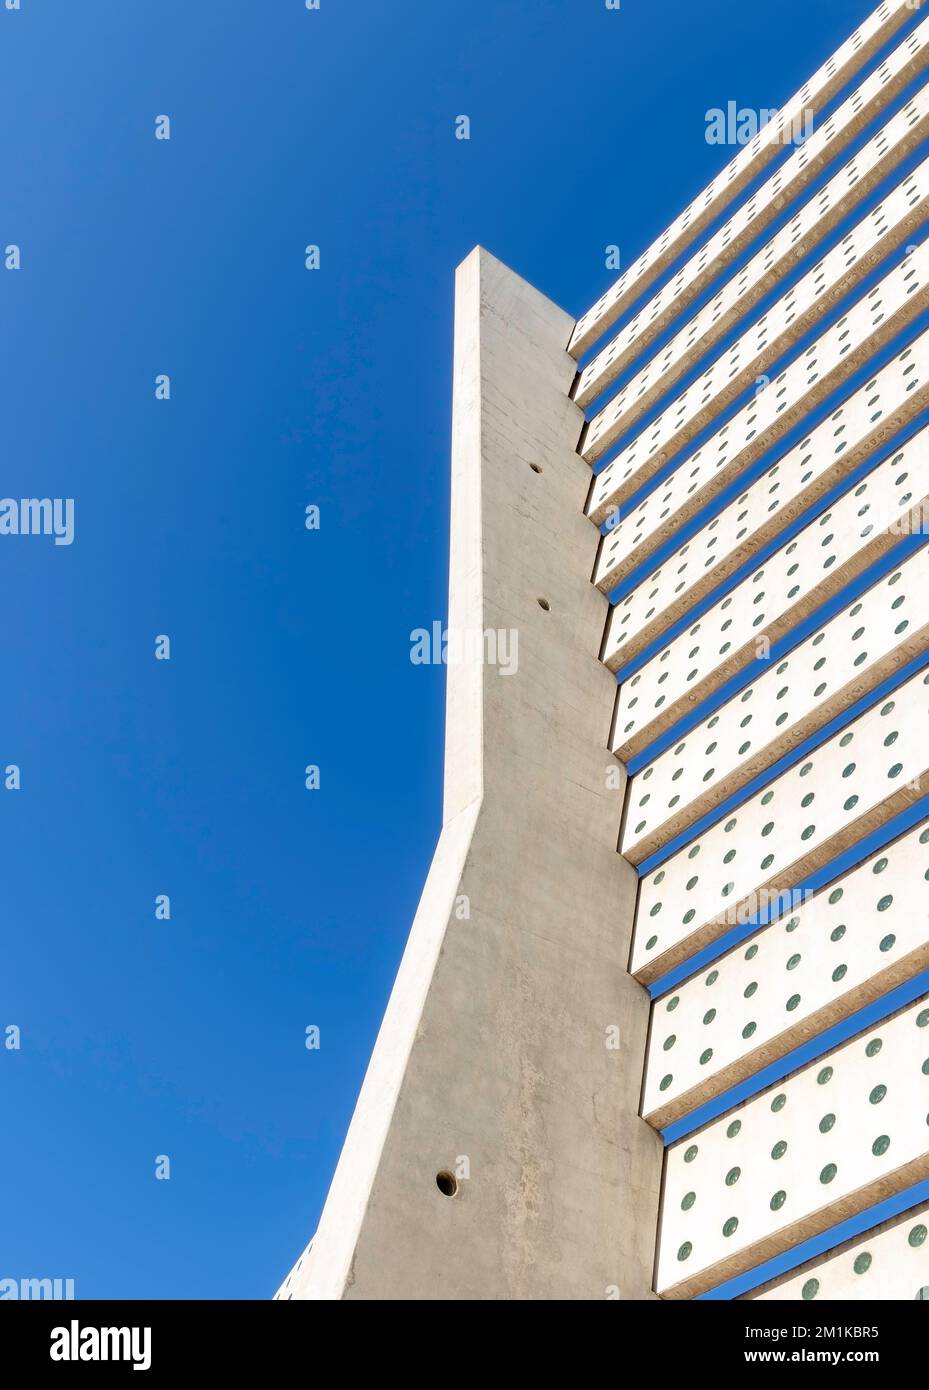 Détail de l'architecture moderne. Infrastructure verticale en béton sur ciel bleu. Concept de simplicité Banque D'Images